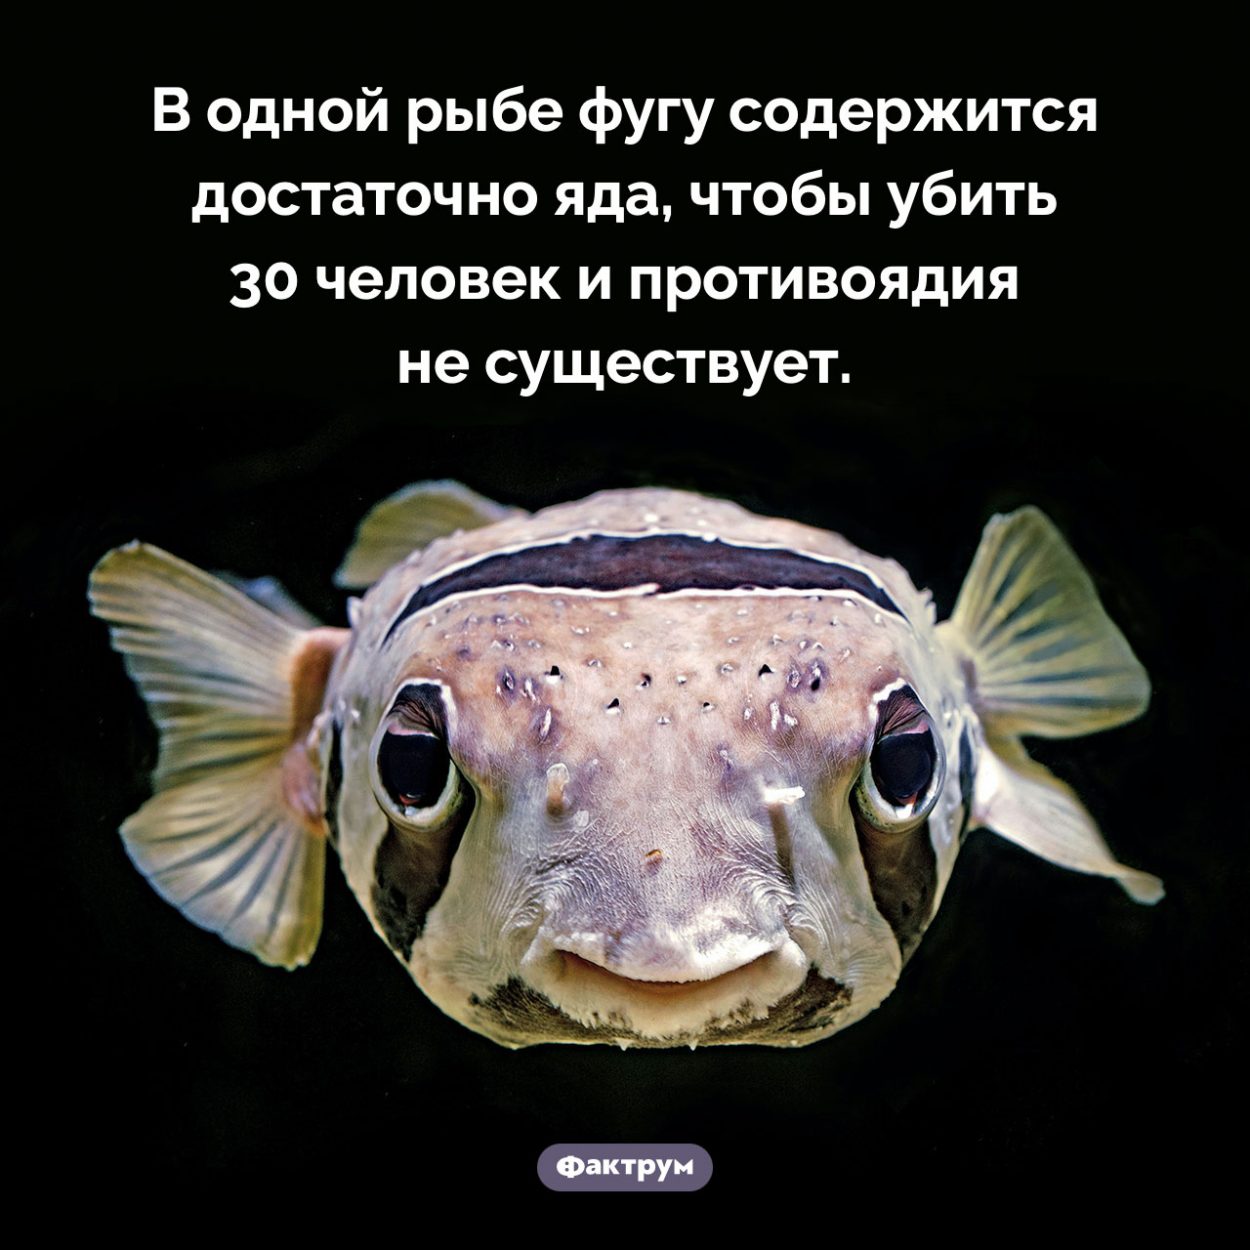 Яд рыбы фугу. В одной рыбе фугу содержится достаточно яда, чтобы убить 30 человек и противоядия не существует.